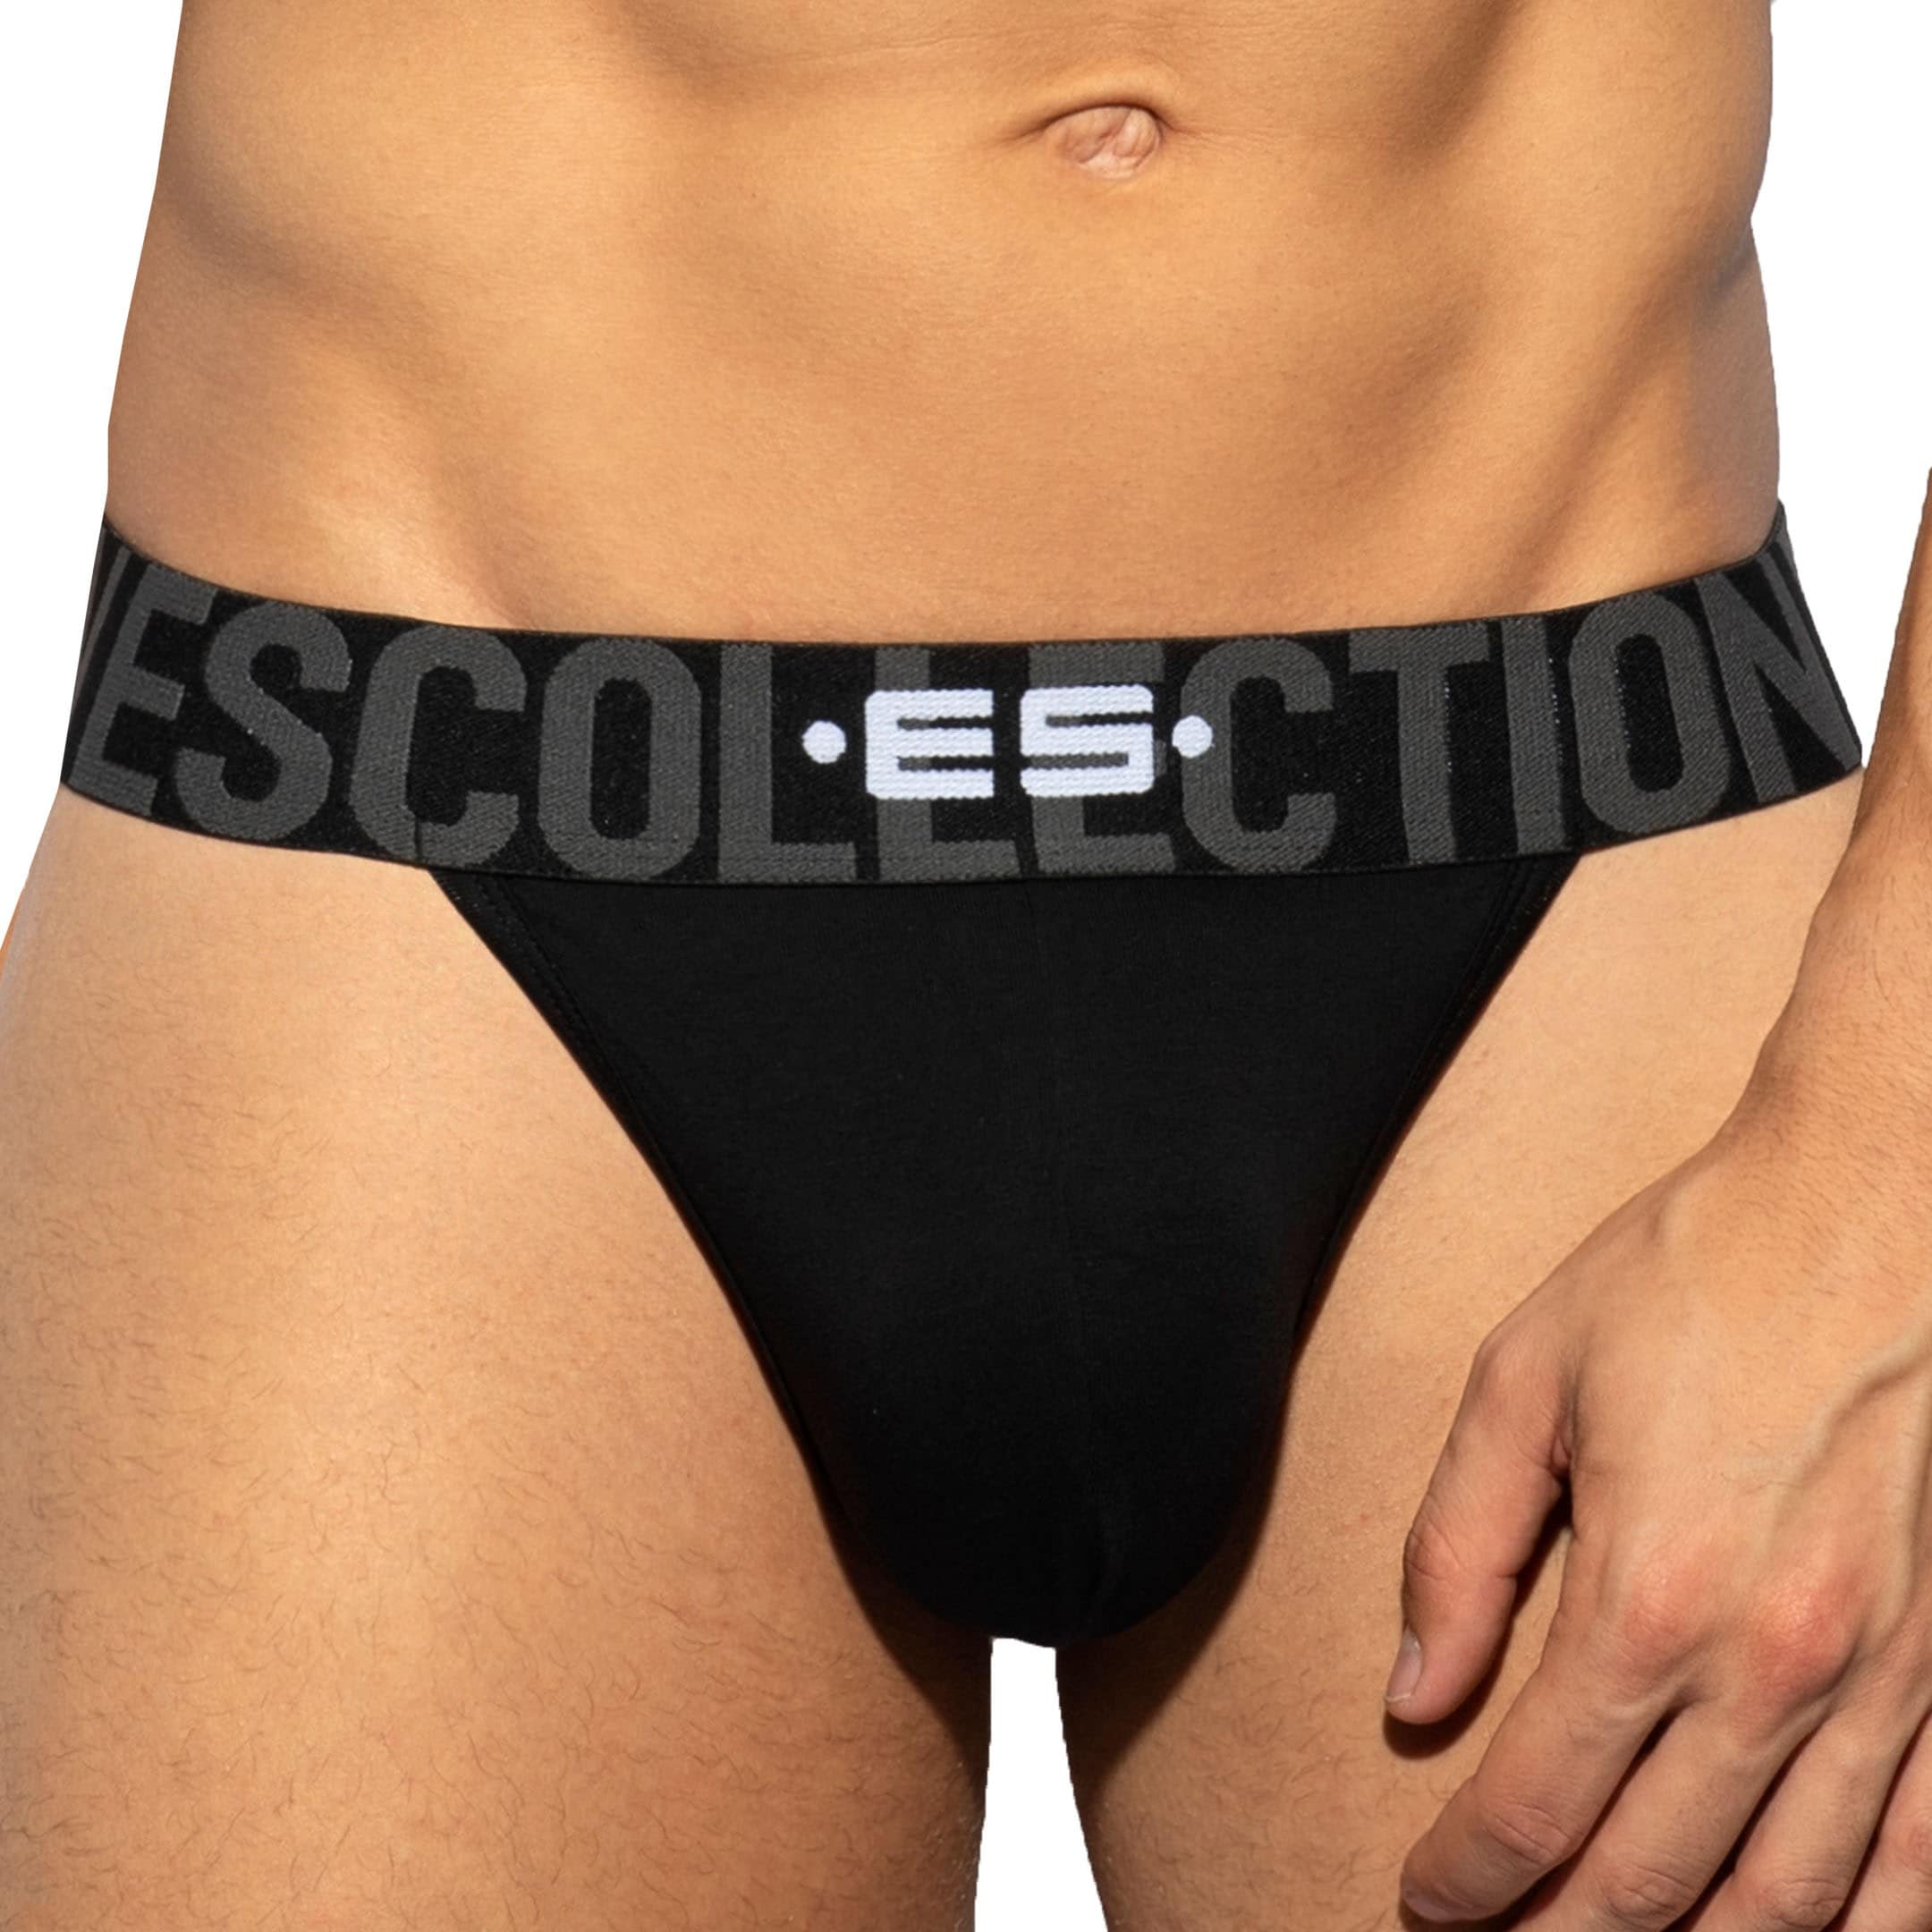 Diesel Men Black cotton stretch G-string Thong underwear size S M L XL